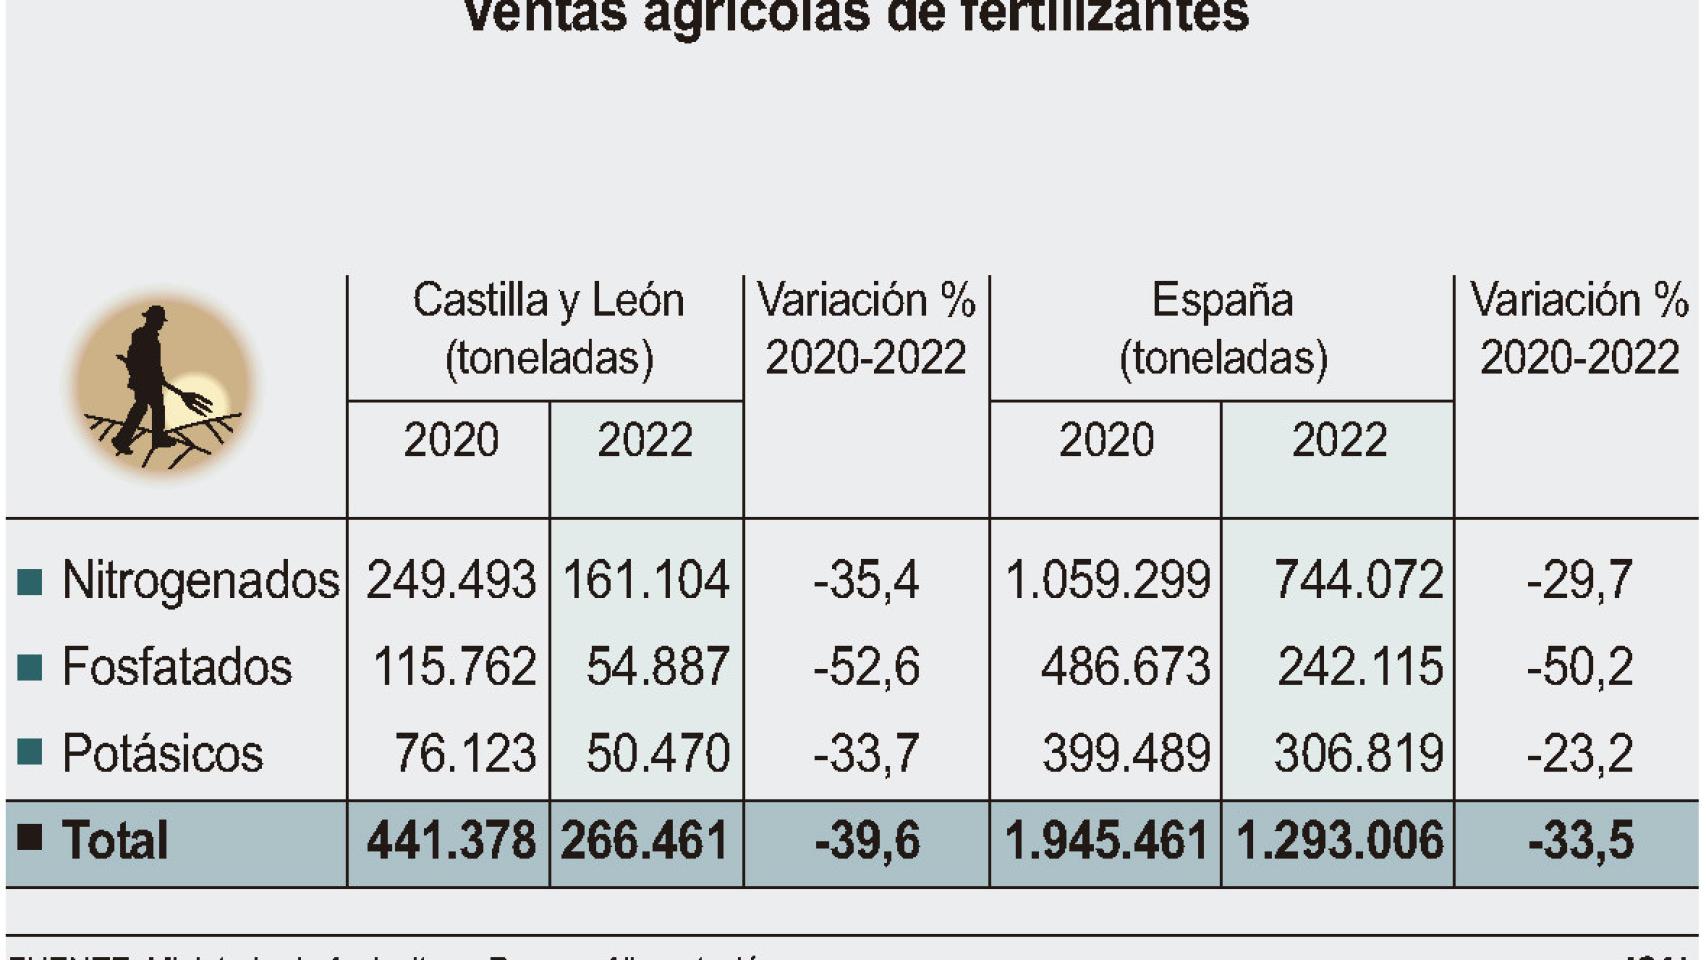 Venta de fertilizantes en Castilla y León